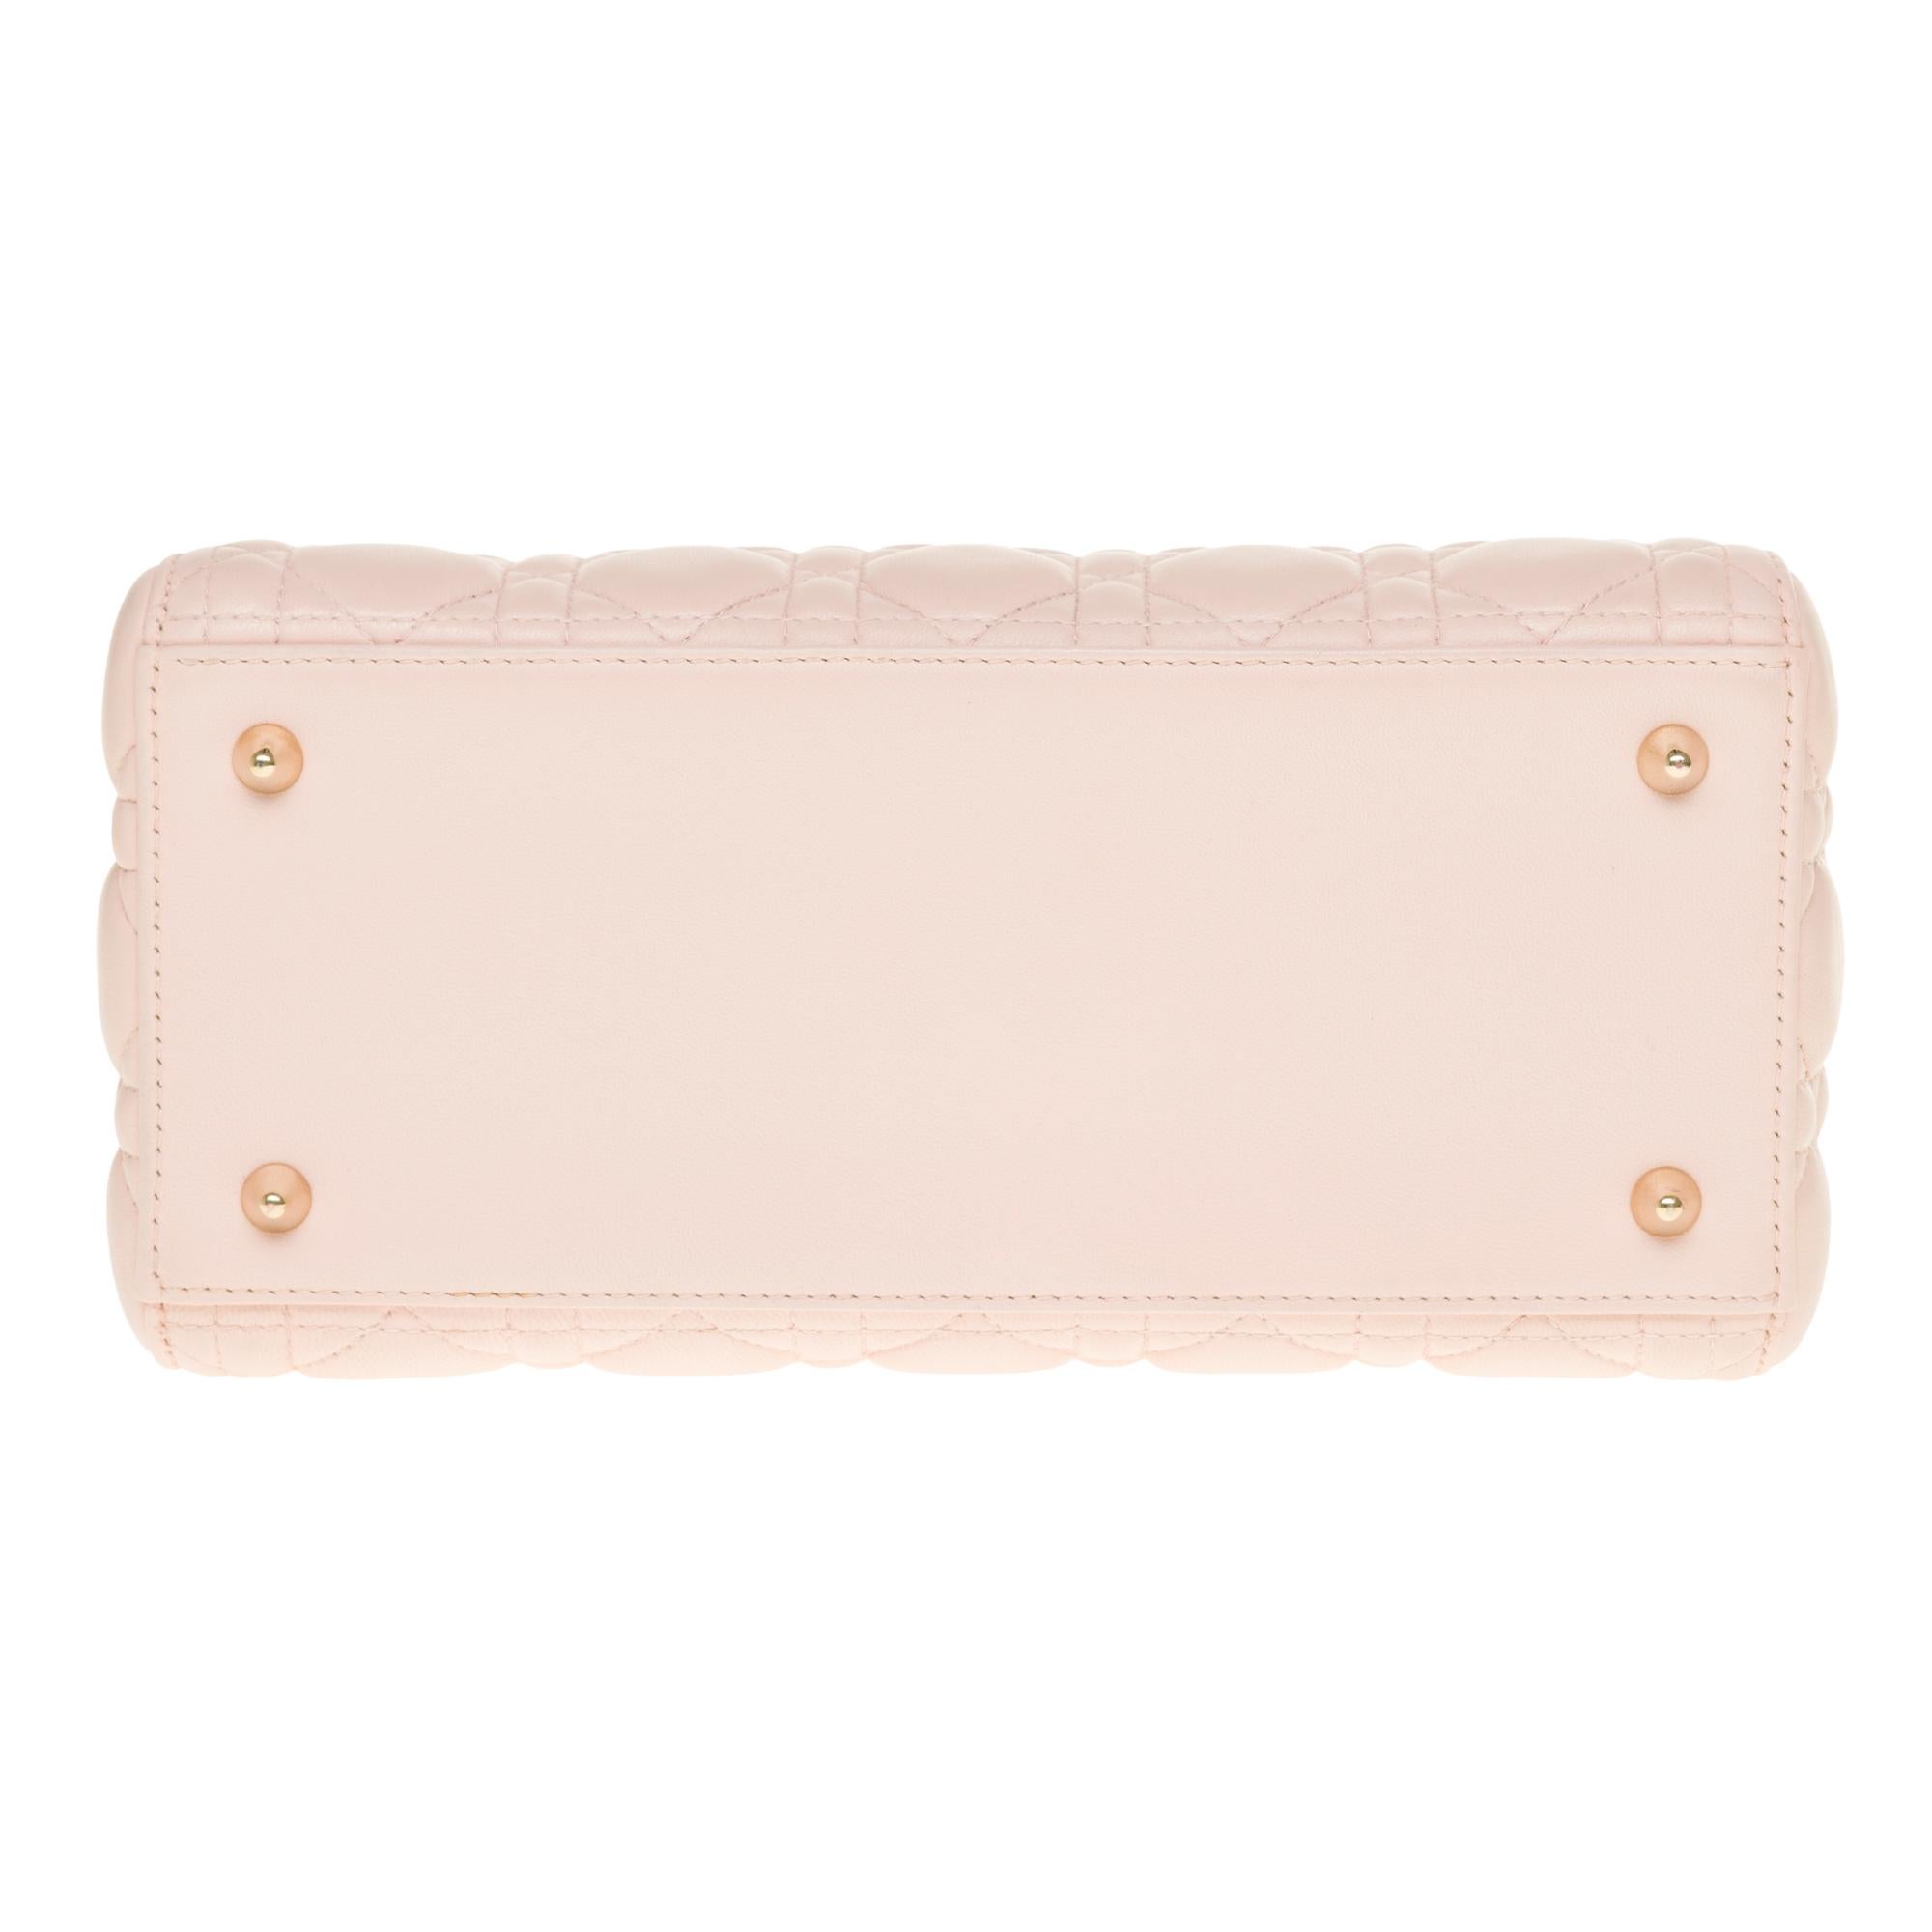  Christian Dior Lady Dior Medium size handbag in Baby Pink cannage leather, CHW 4